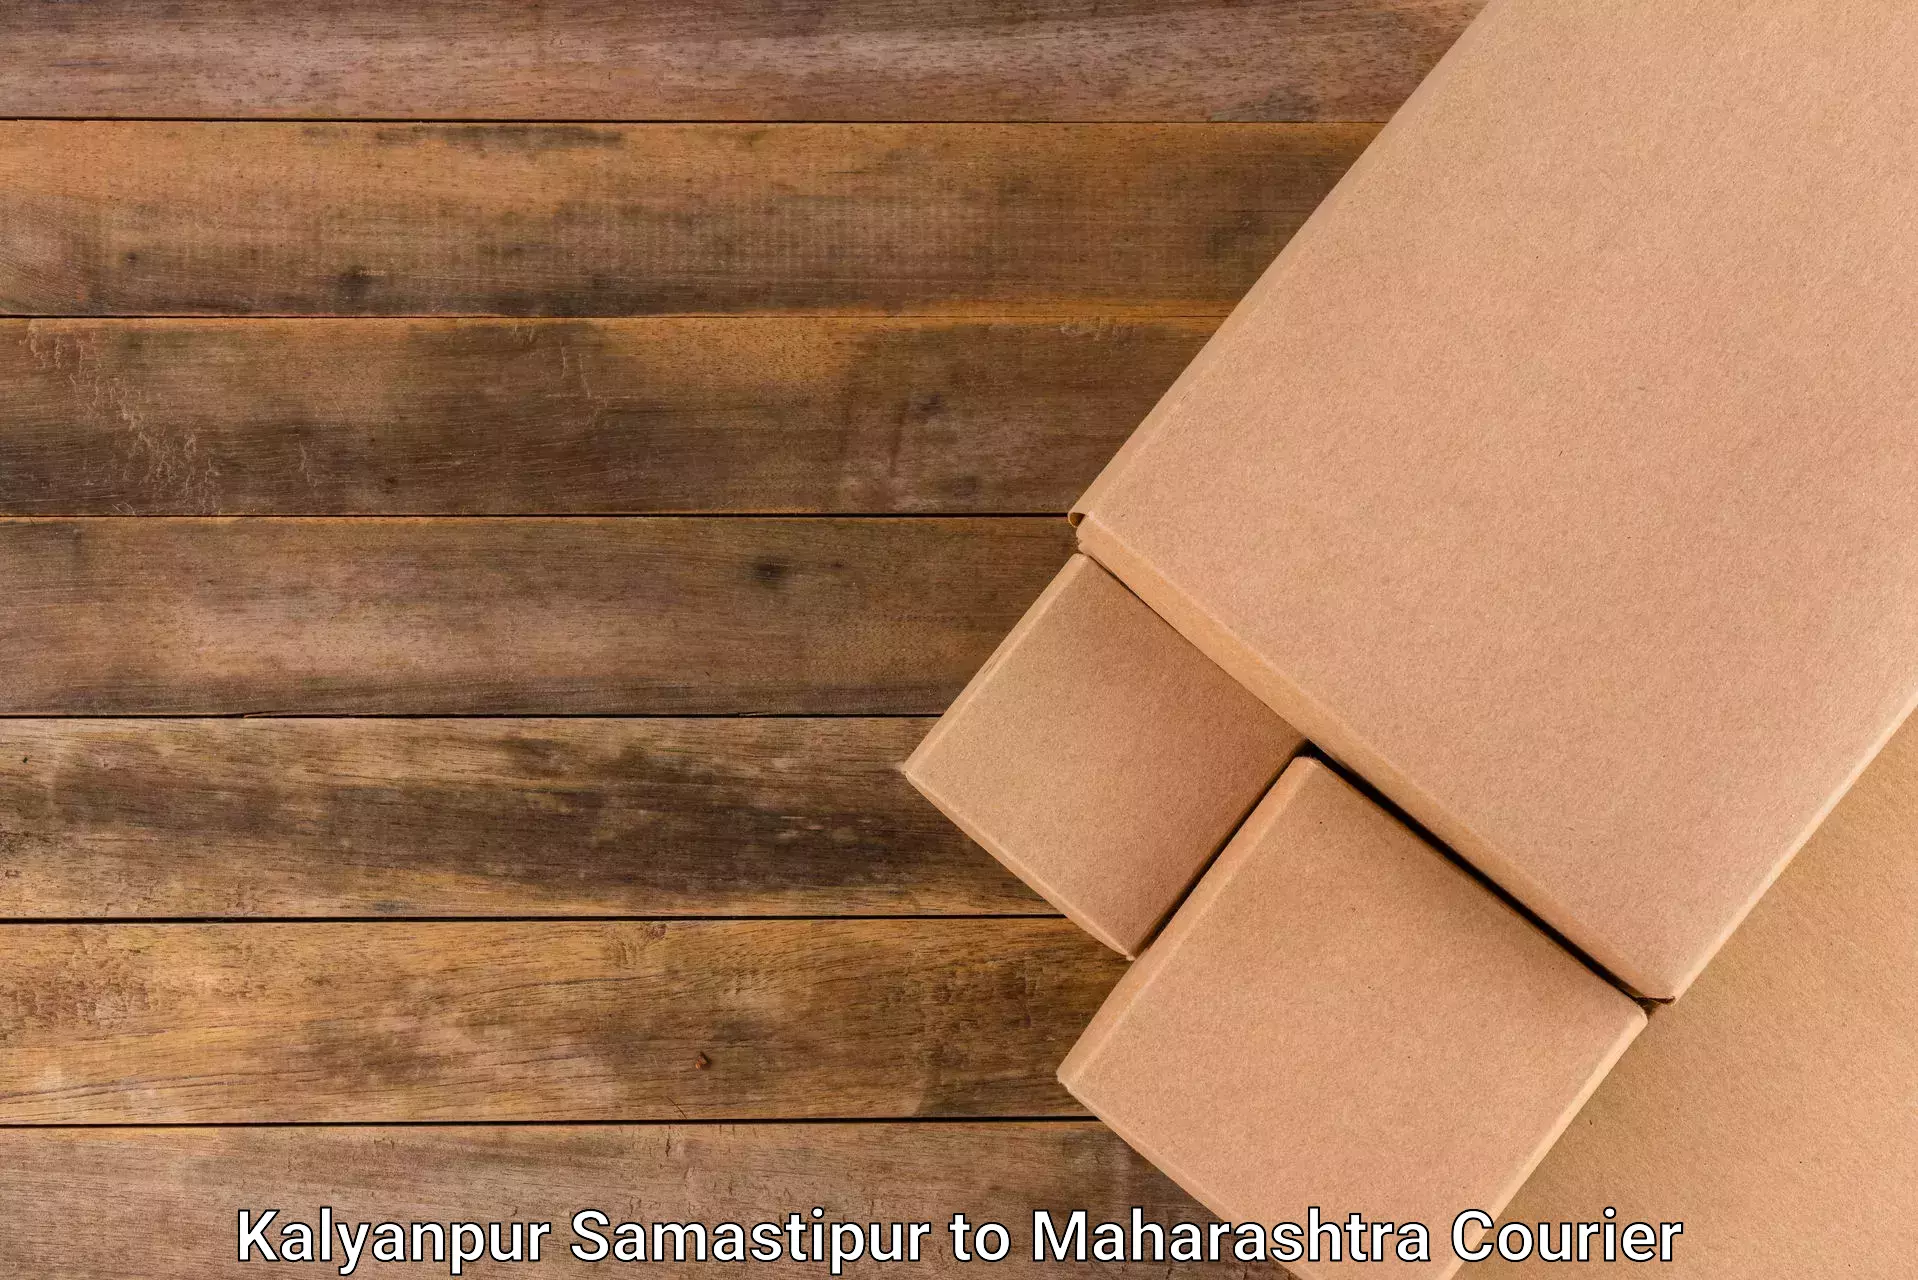 Digital courier platforms Kalyanpur Samastipur to Lonavala